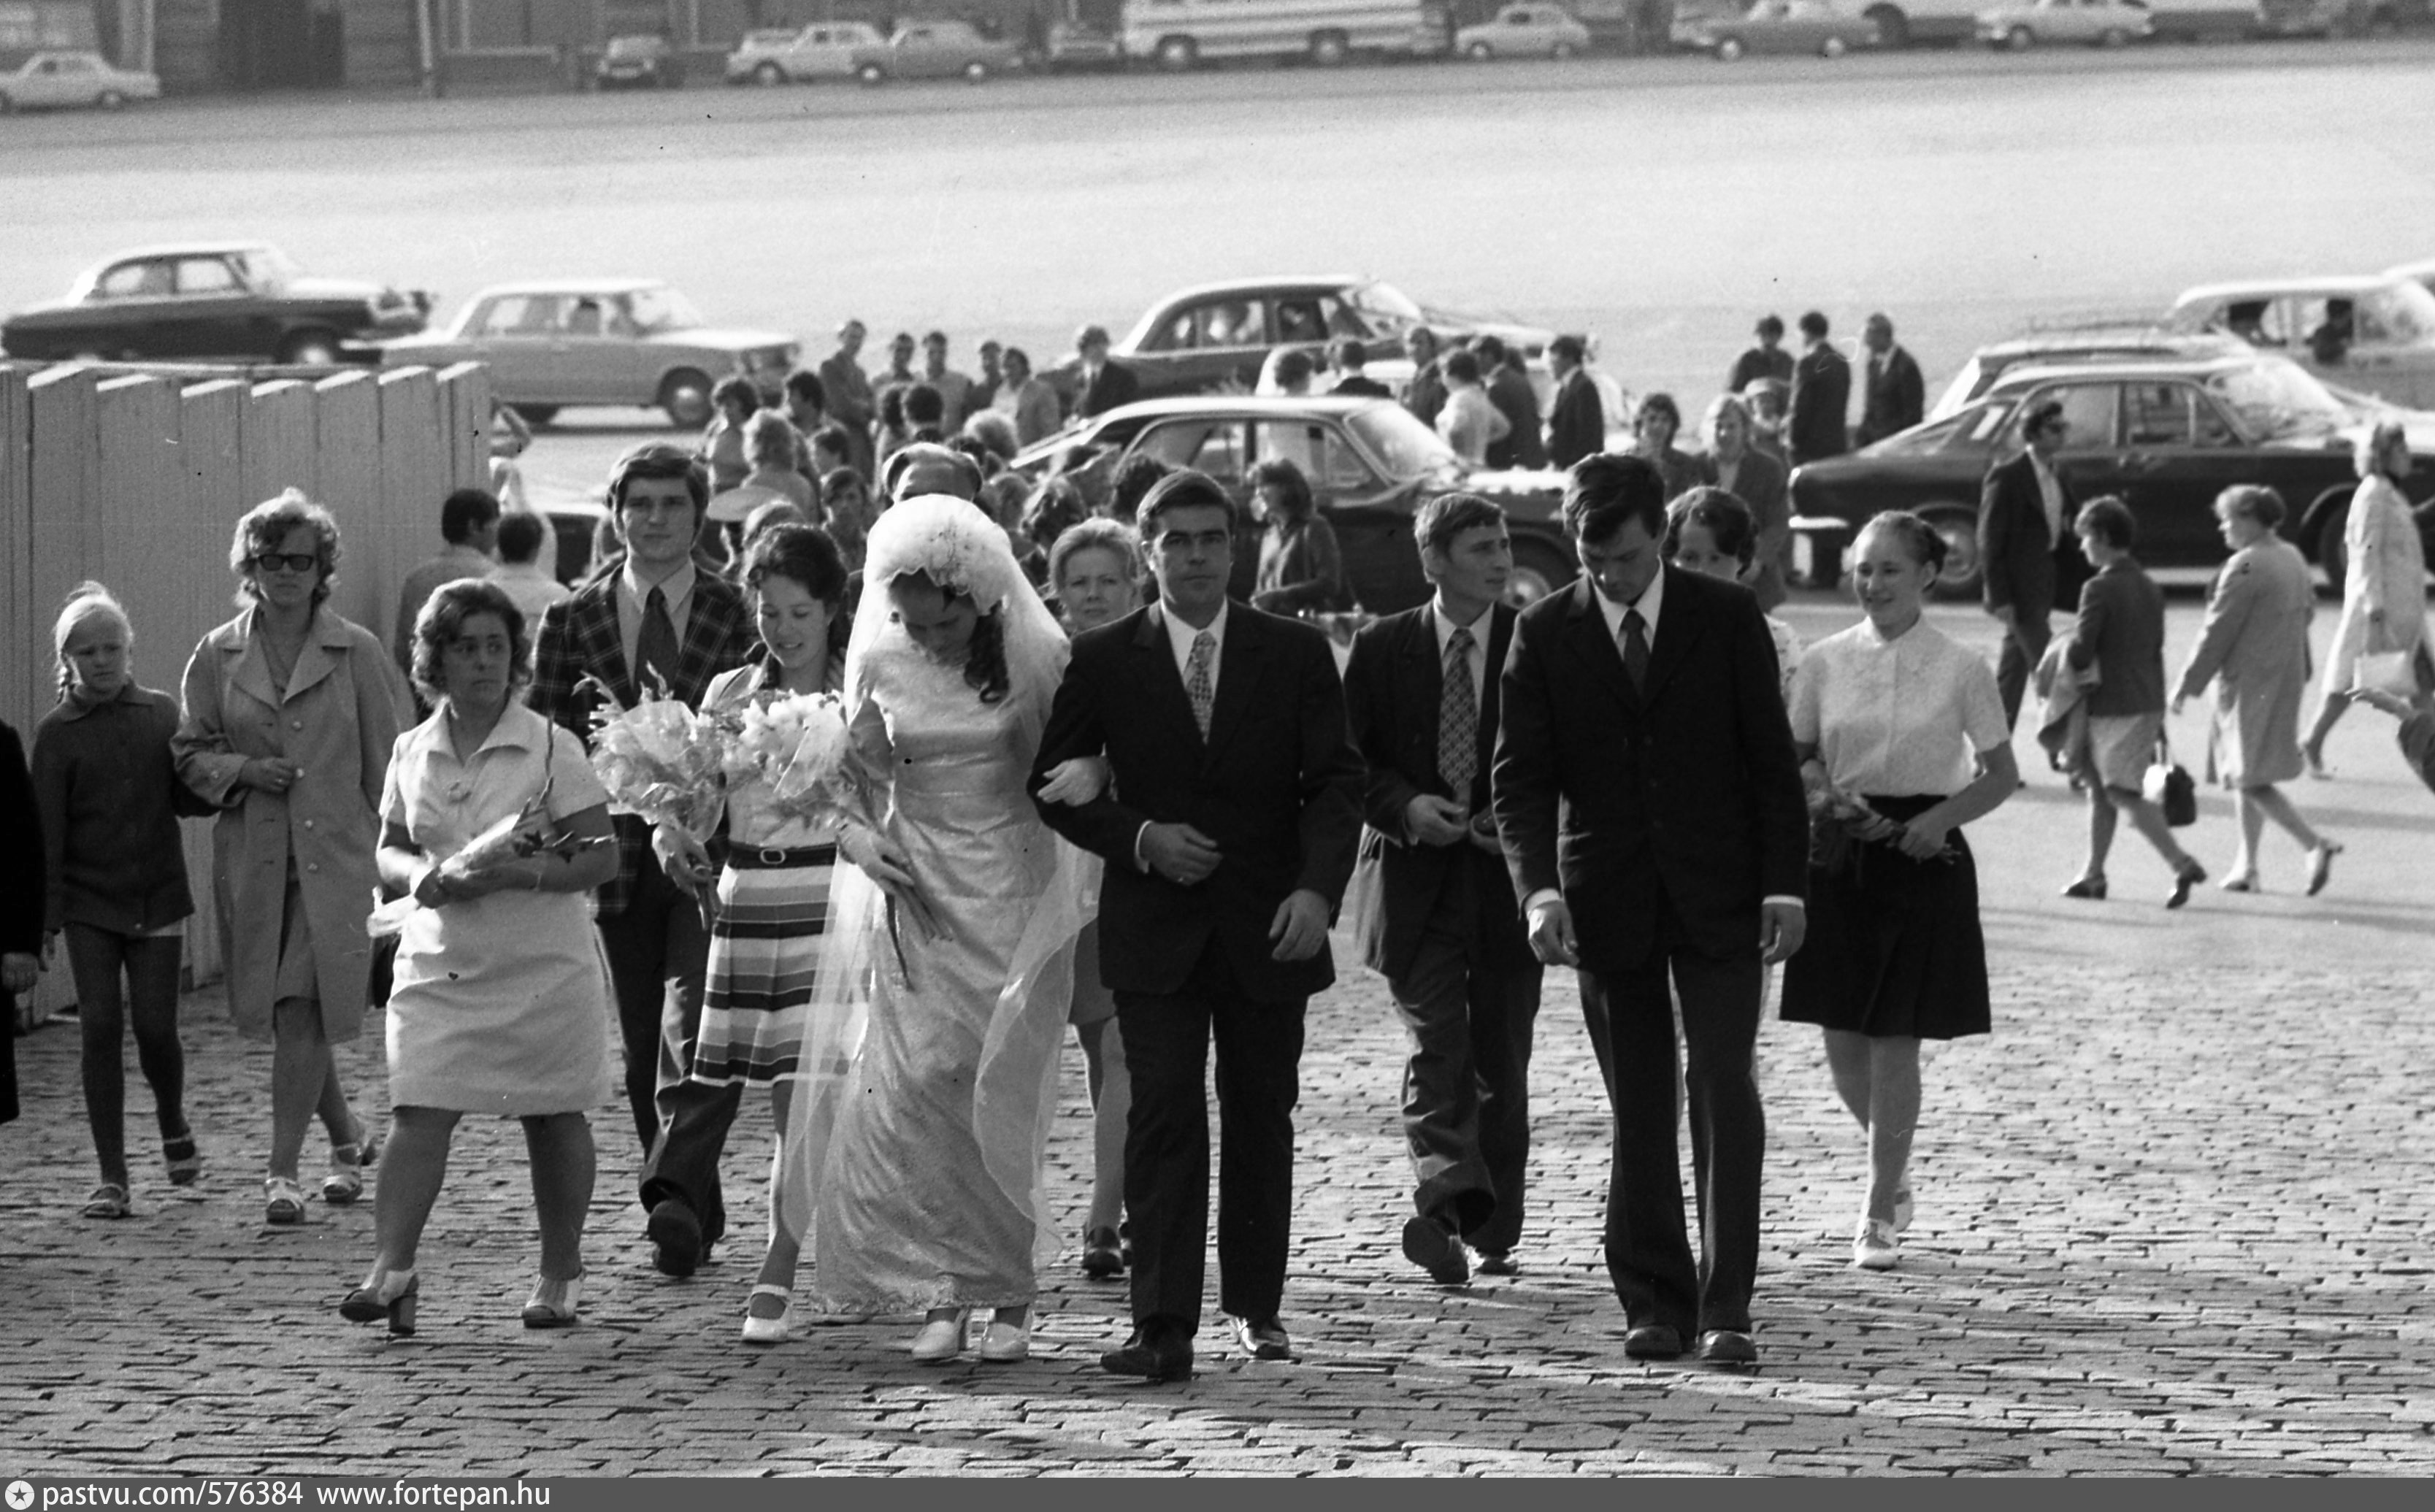 Невеста проживающая 7 жизнь. Невеста с севера. Невеста 1971 год. Невеста Абхазии 1991 года.